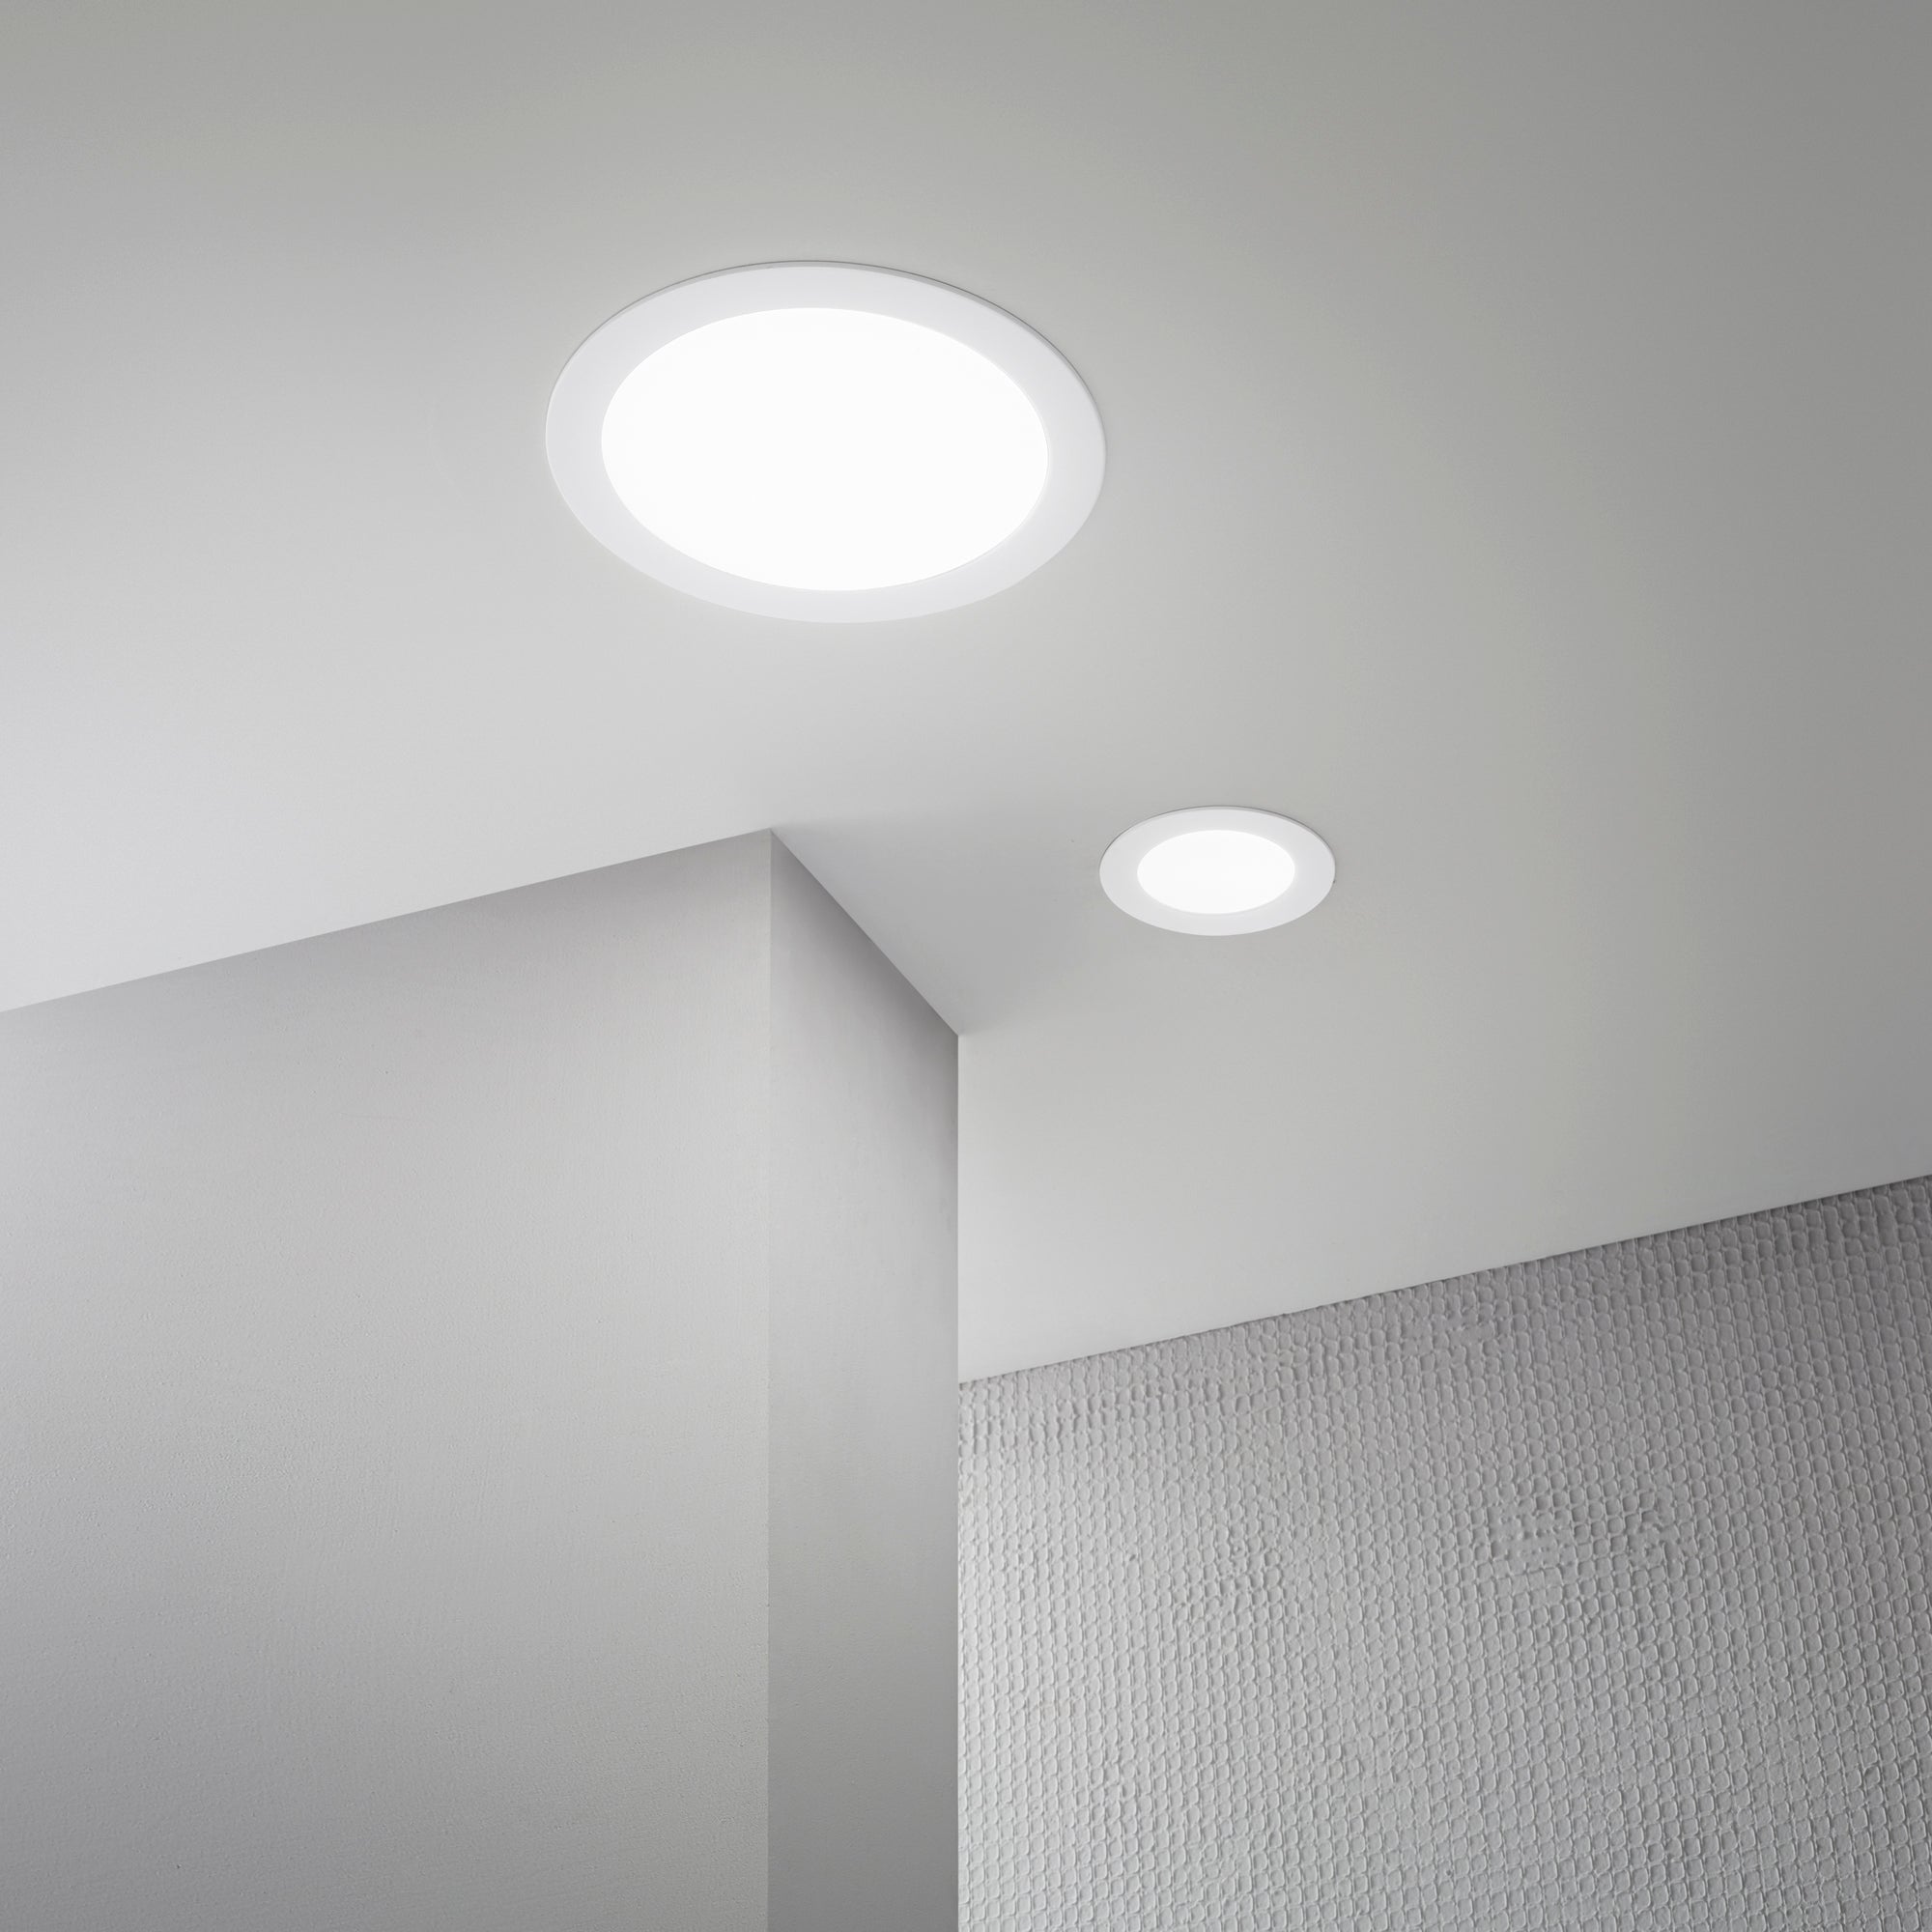 Luminaire encastré LED SLIM en aluminium blanc avec interrupteur CCT pour changer la température de couleur